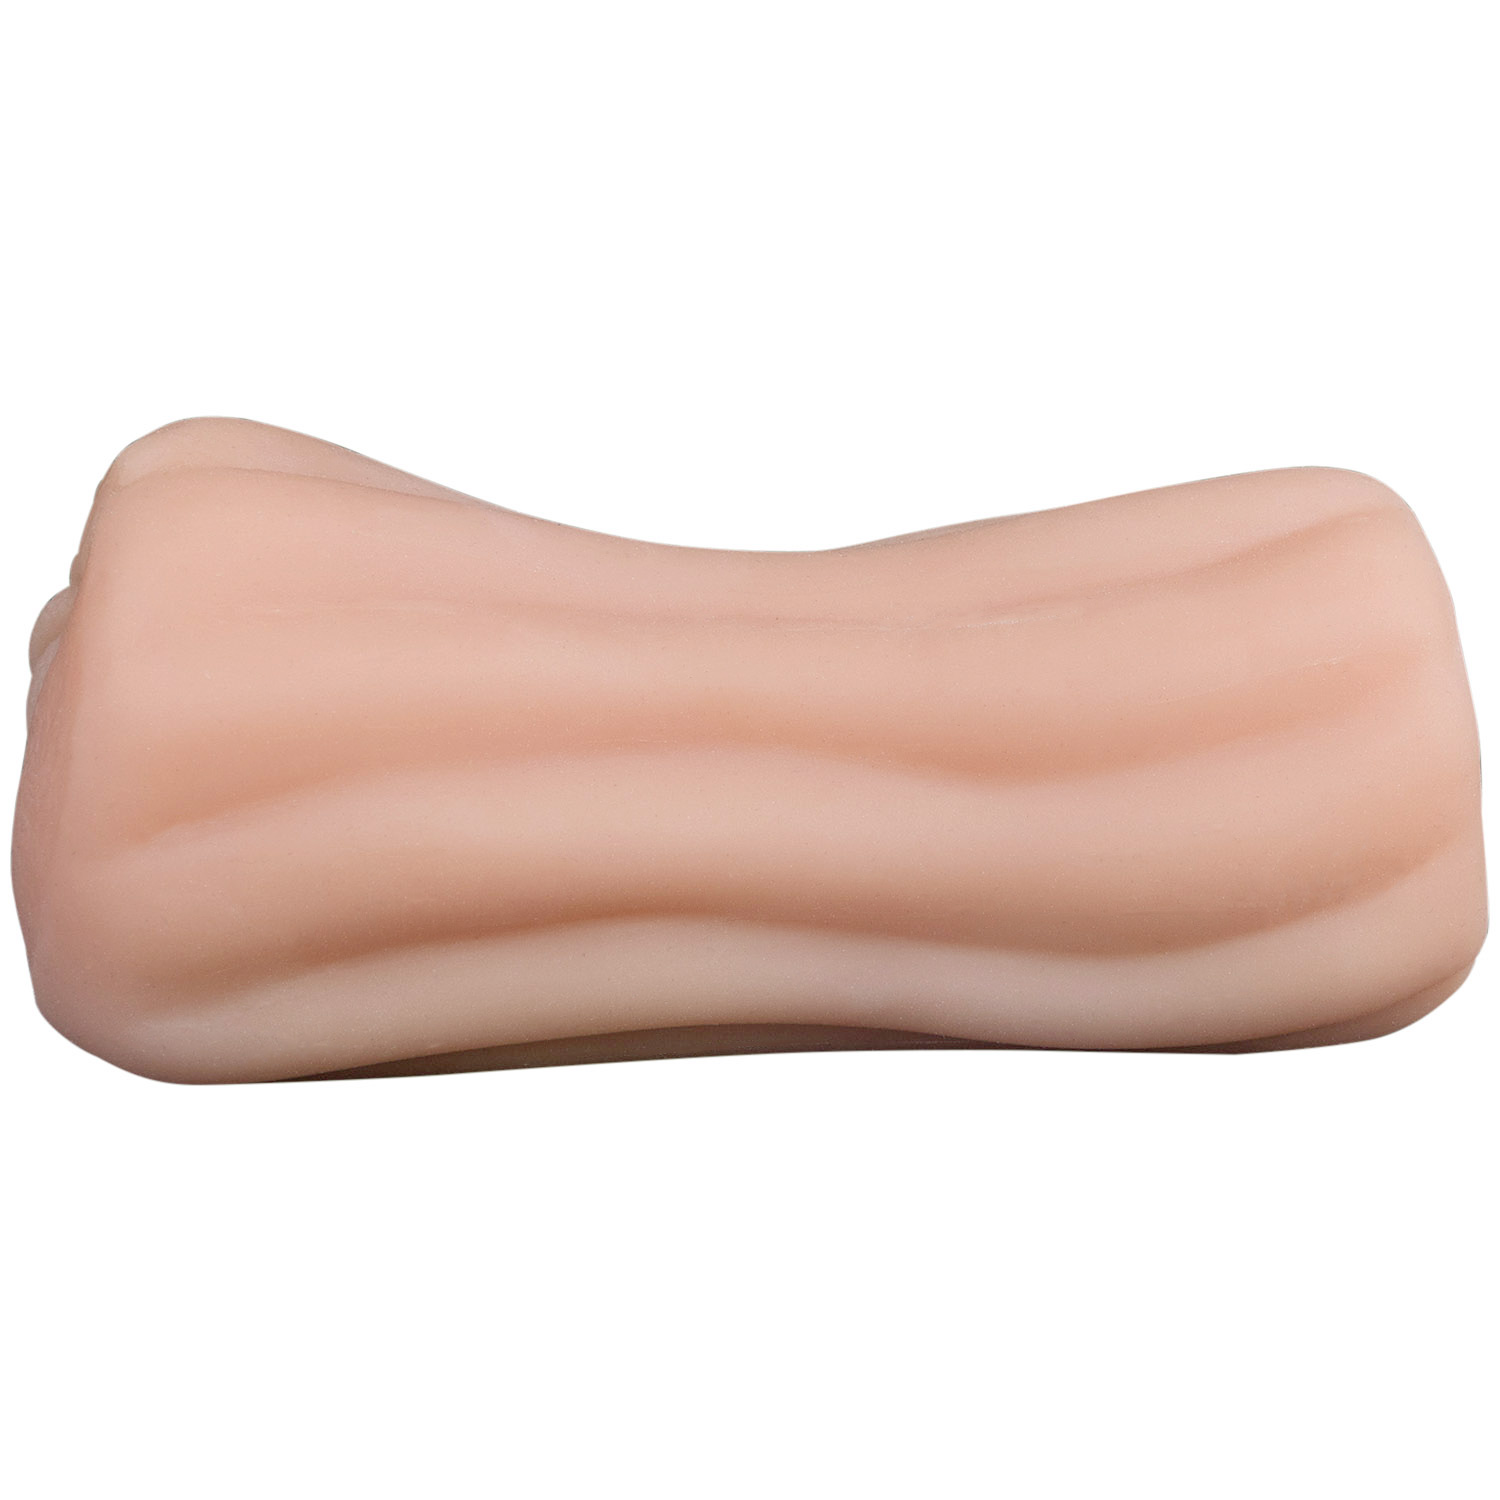 MR.MEMBR MR.MEMBR Anabella Realistisk Pocket Vagina - Beige